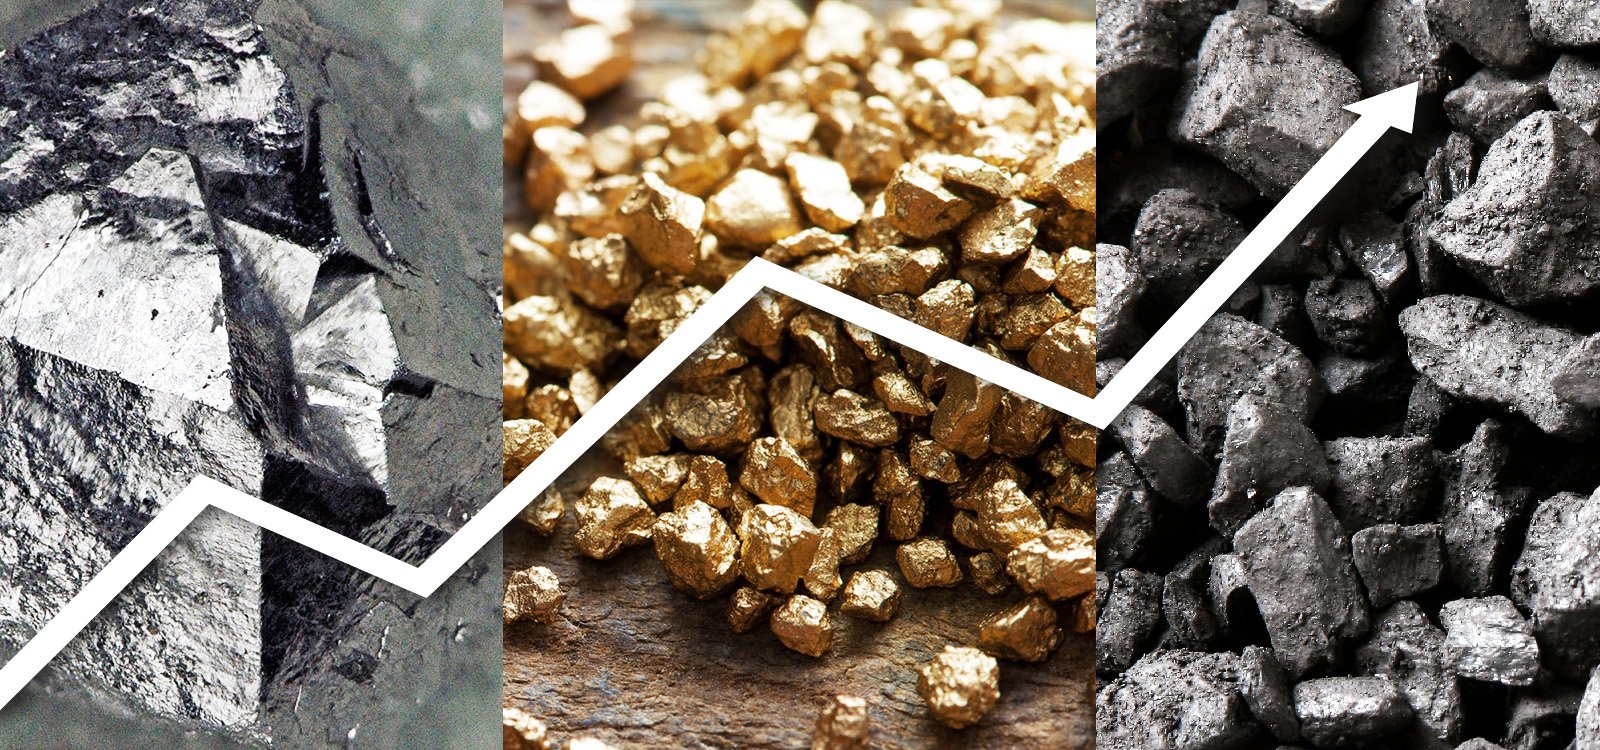 <p>Os preços das commodities mostraram sinais de recuperação em 2016, como é o caso do minério de ferro, que teve um aumento de quase 100% no início do ano.</p>
